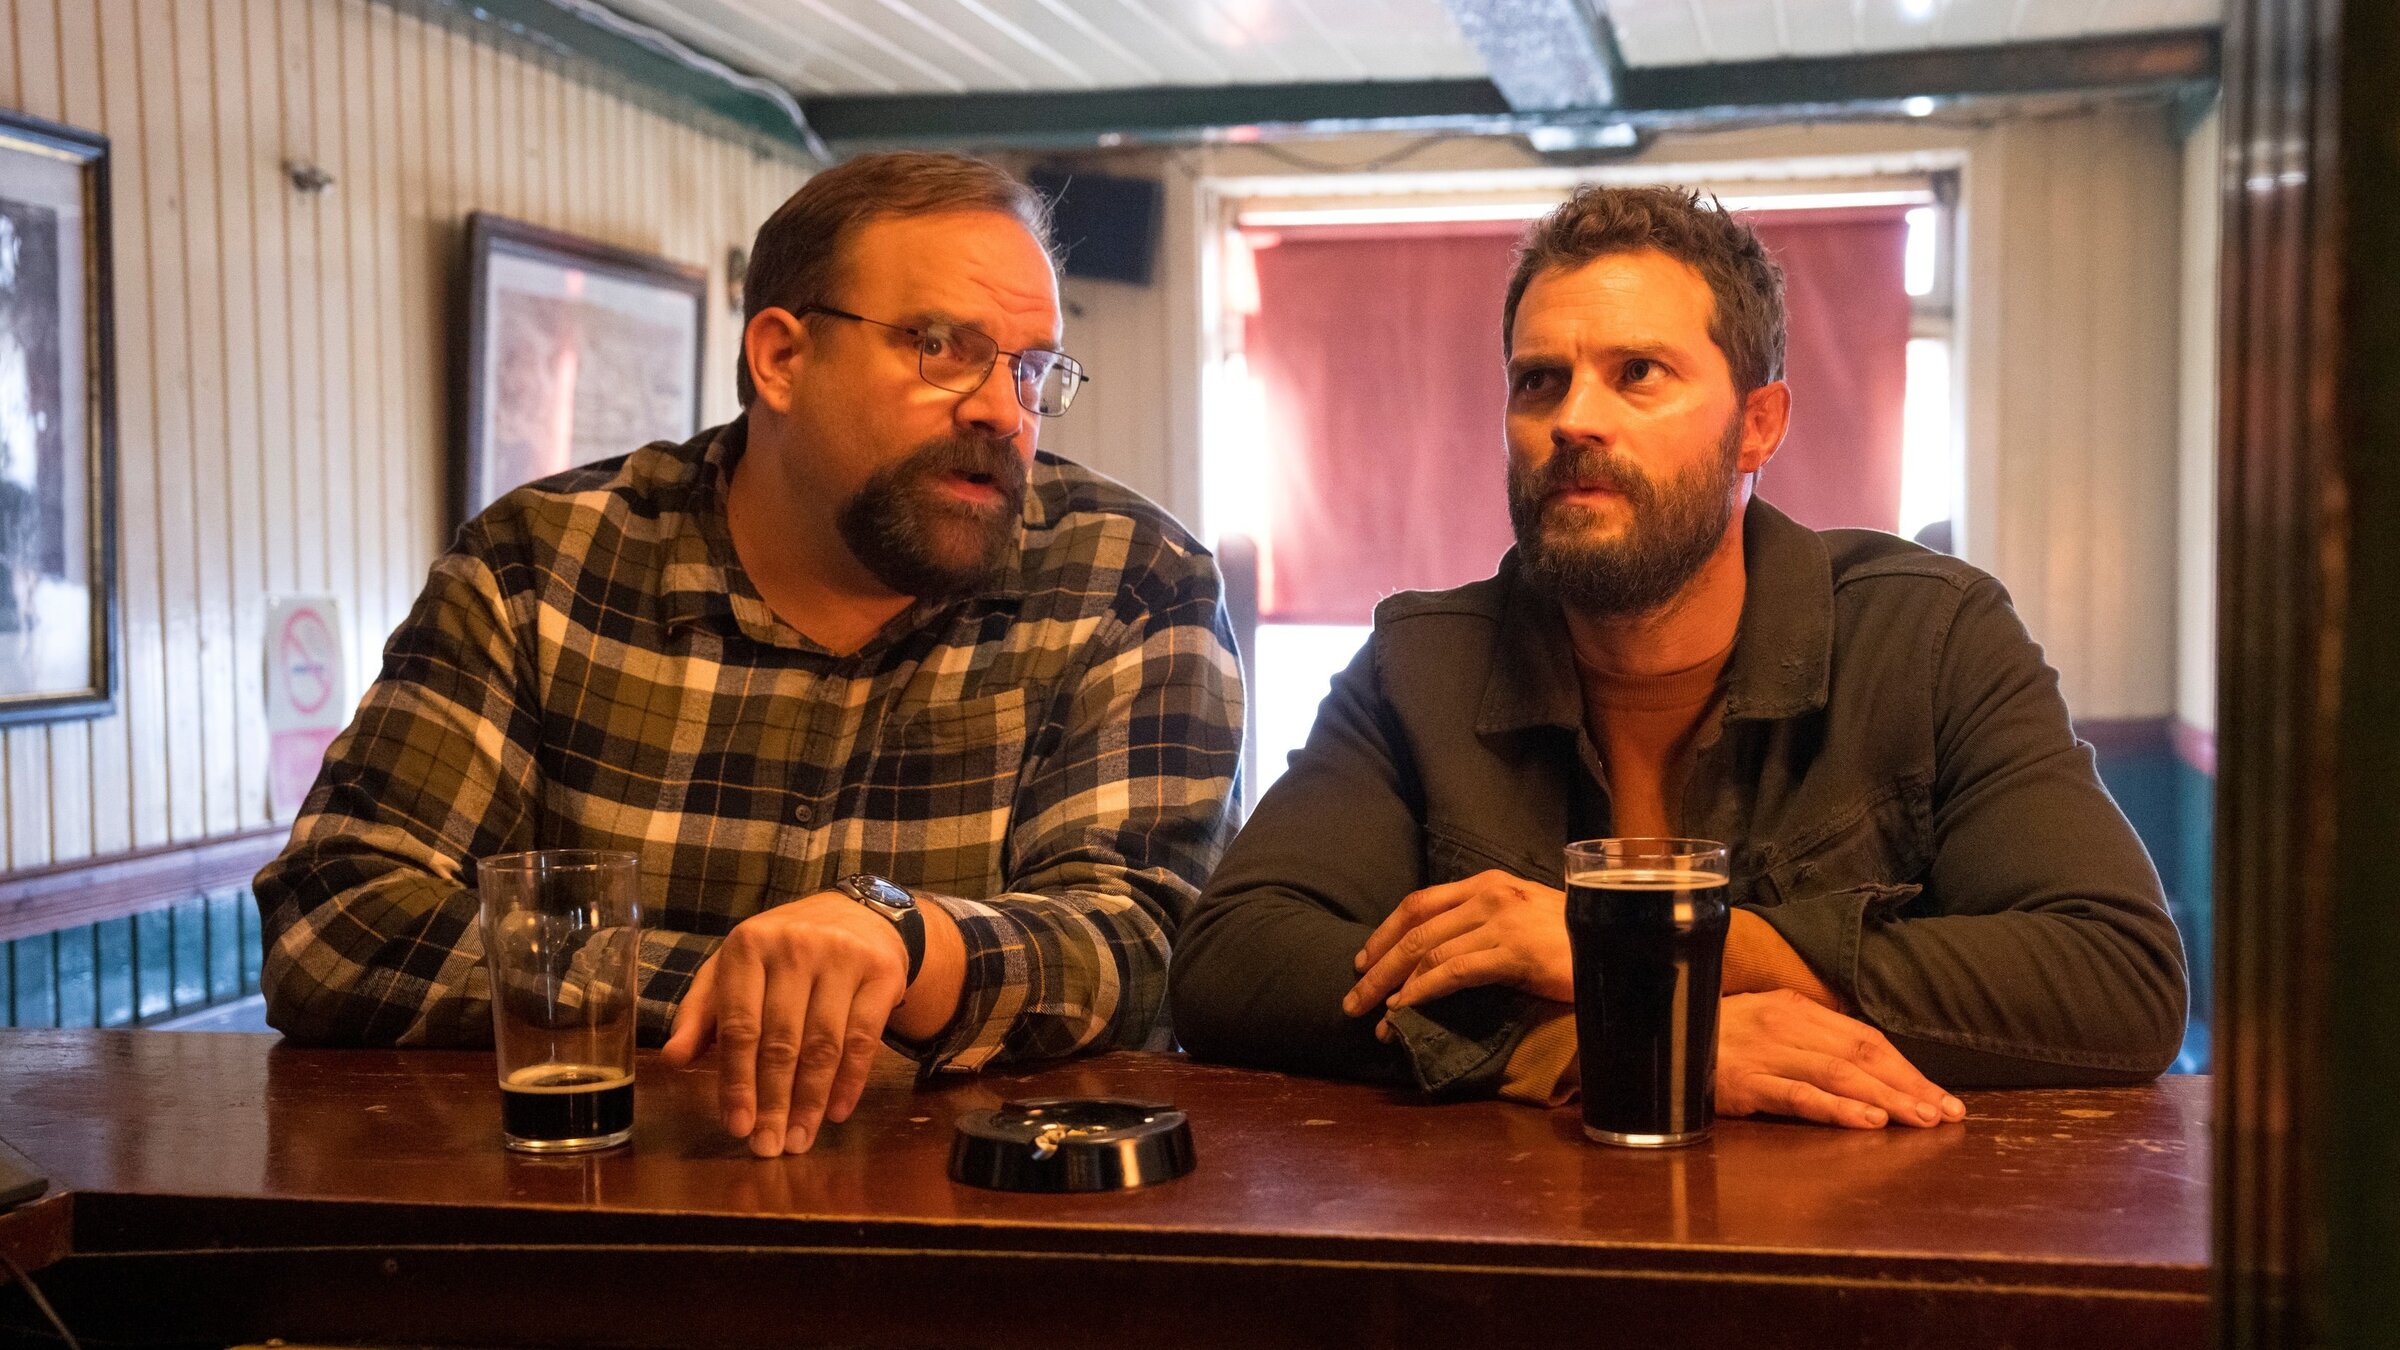 "The Tourist - Irisches Blut - Wurst und Musik": Ethan (Greg Larsen) und Elliot (Jamie Dornan) sitzen nebeneinander an einer Bar und unterhalten sich. Vor ihnen stehen dunkle Biere.